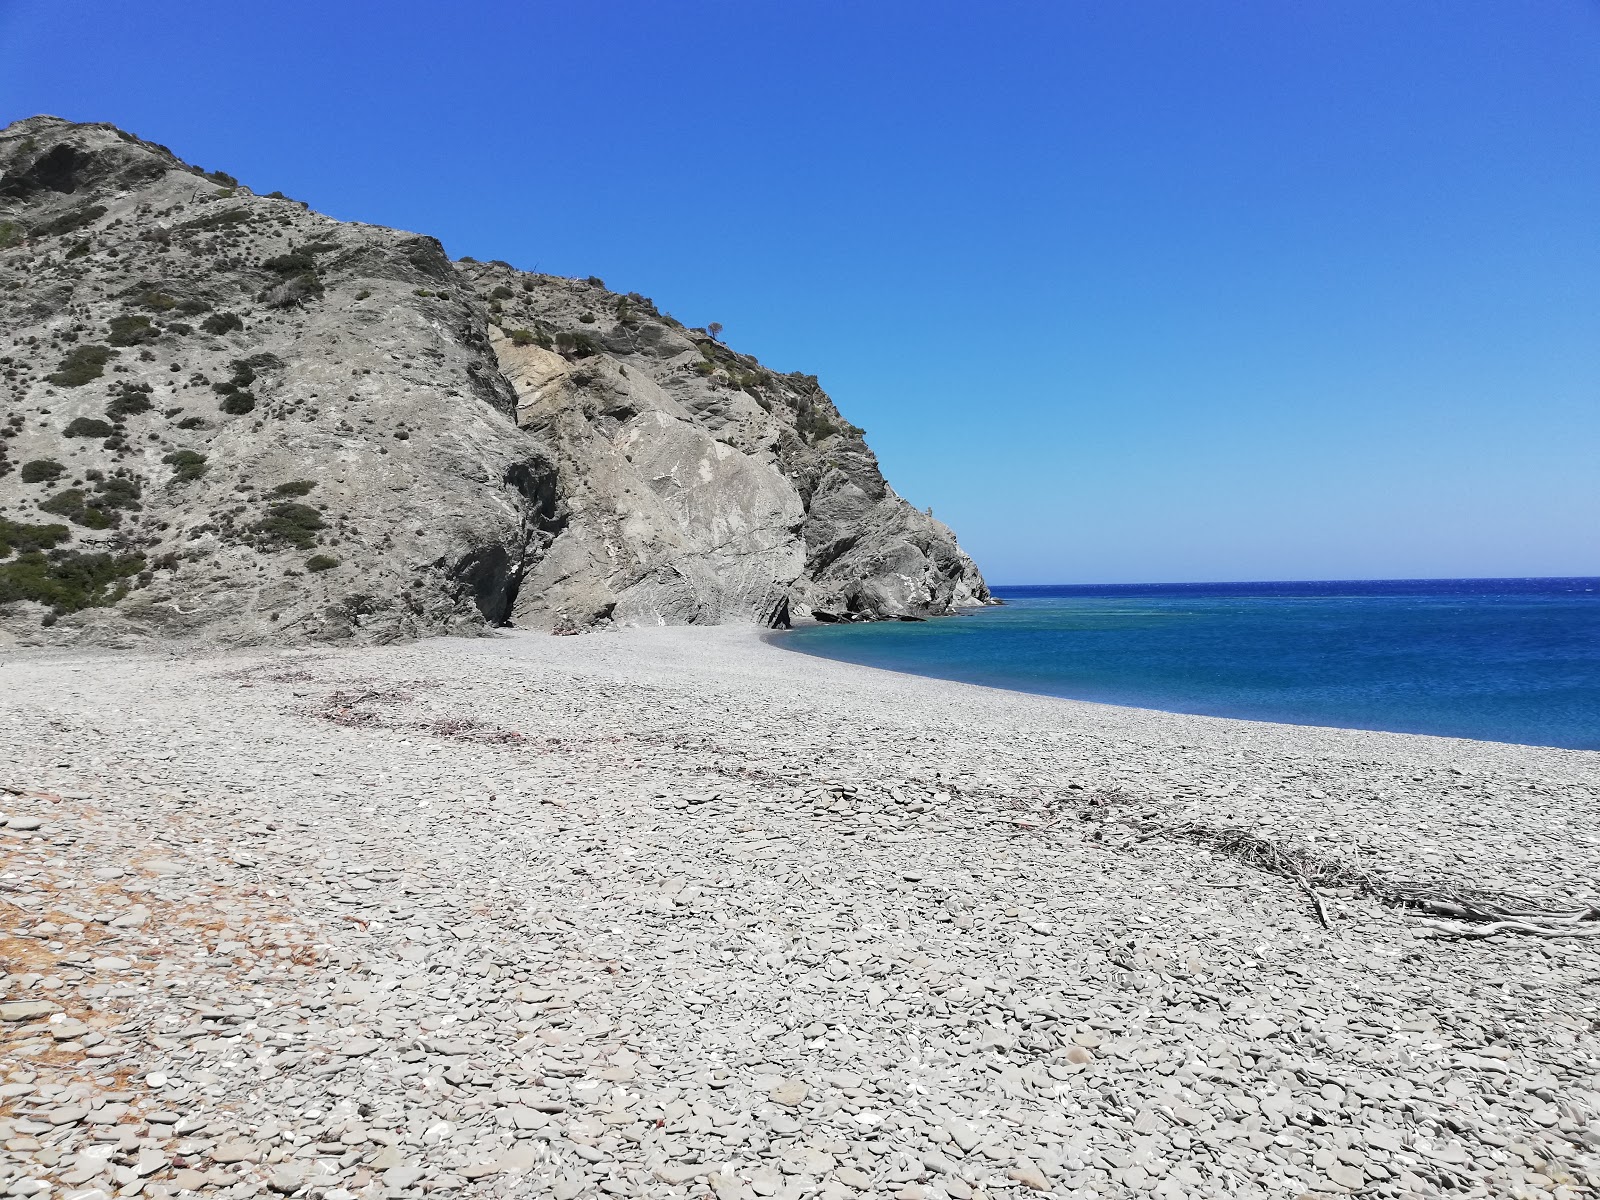 Fotografija Agnotia beach nahaja se v naravnem okolju